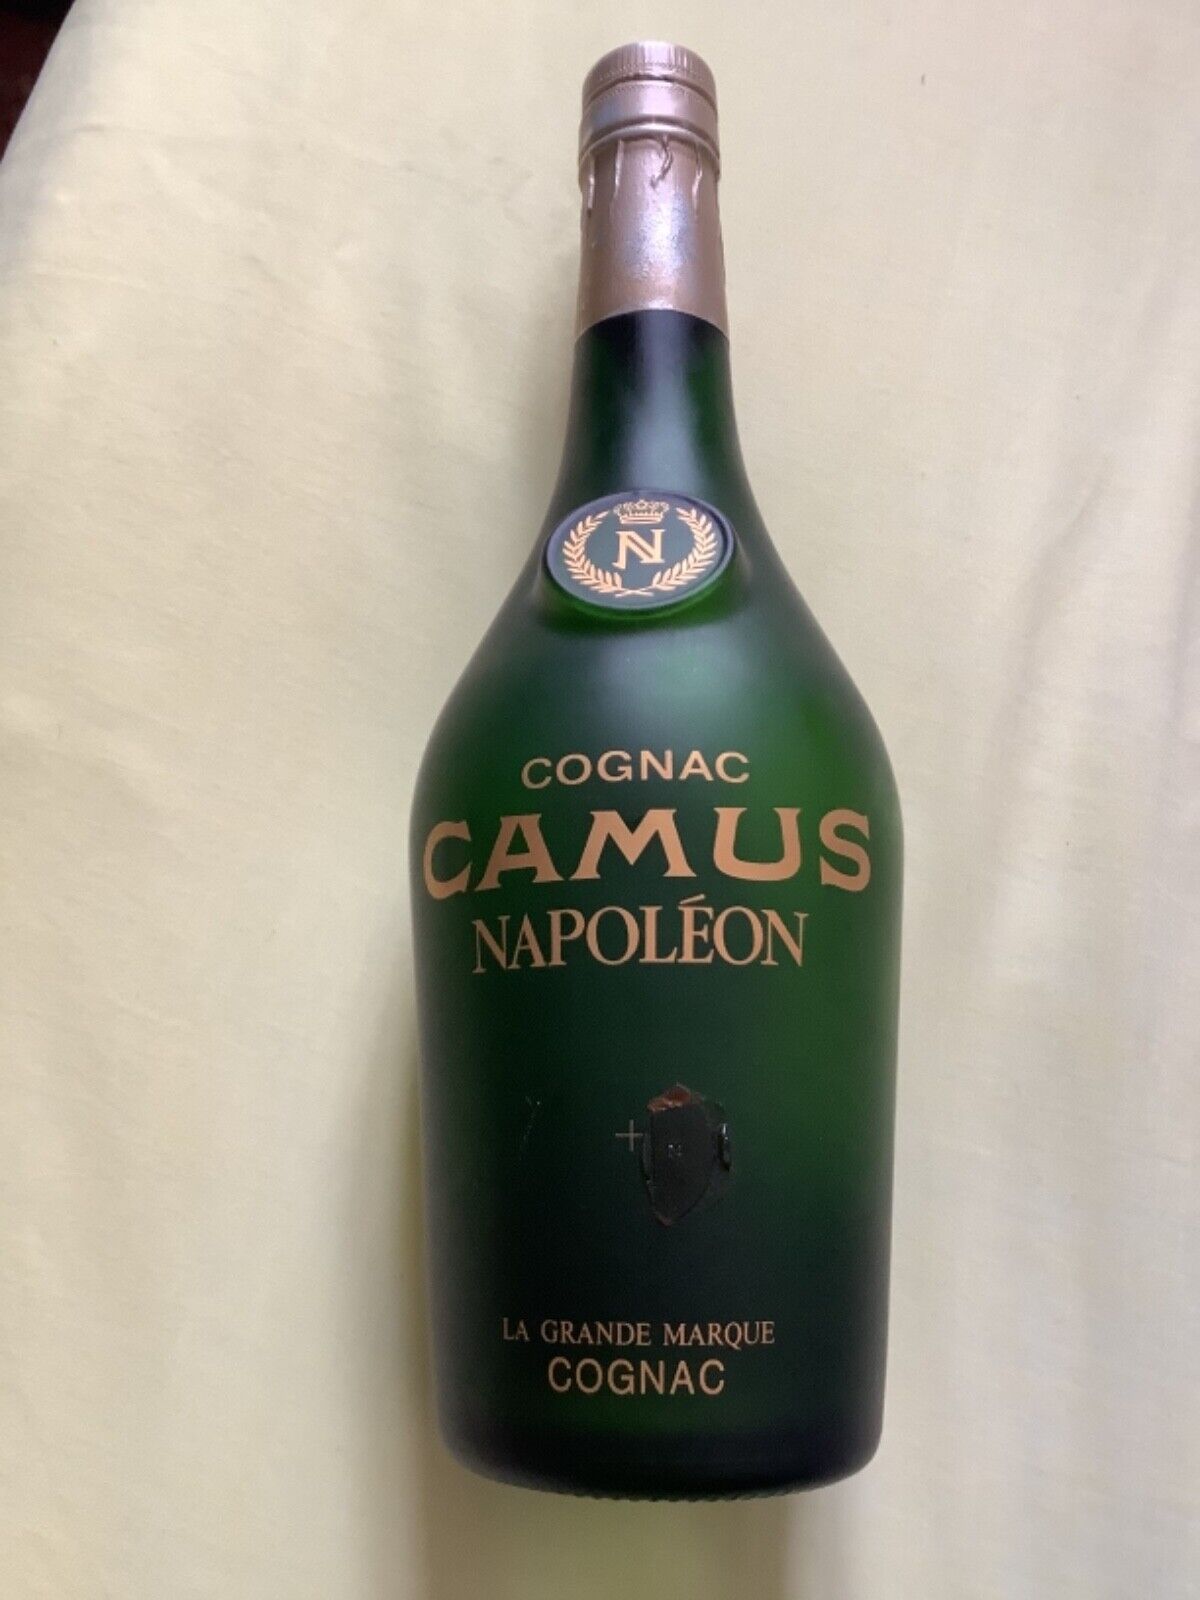 Vintage cognac Camus napoleon bottle